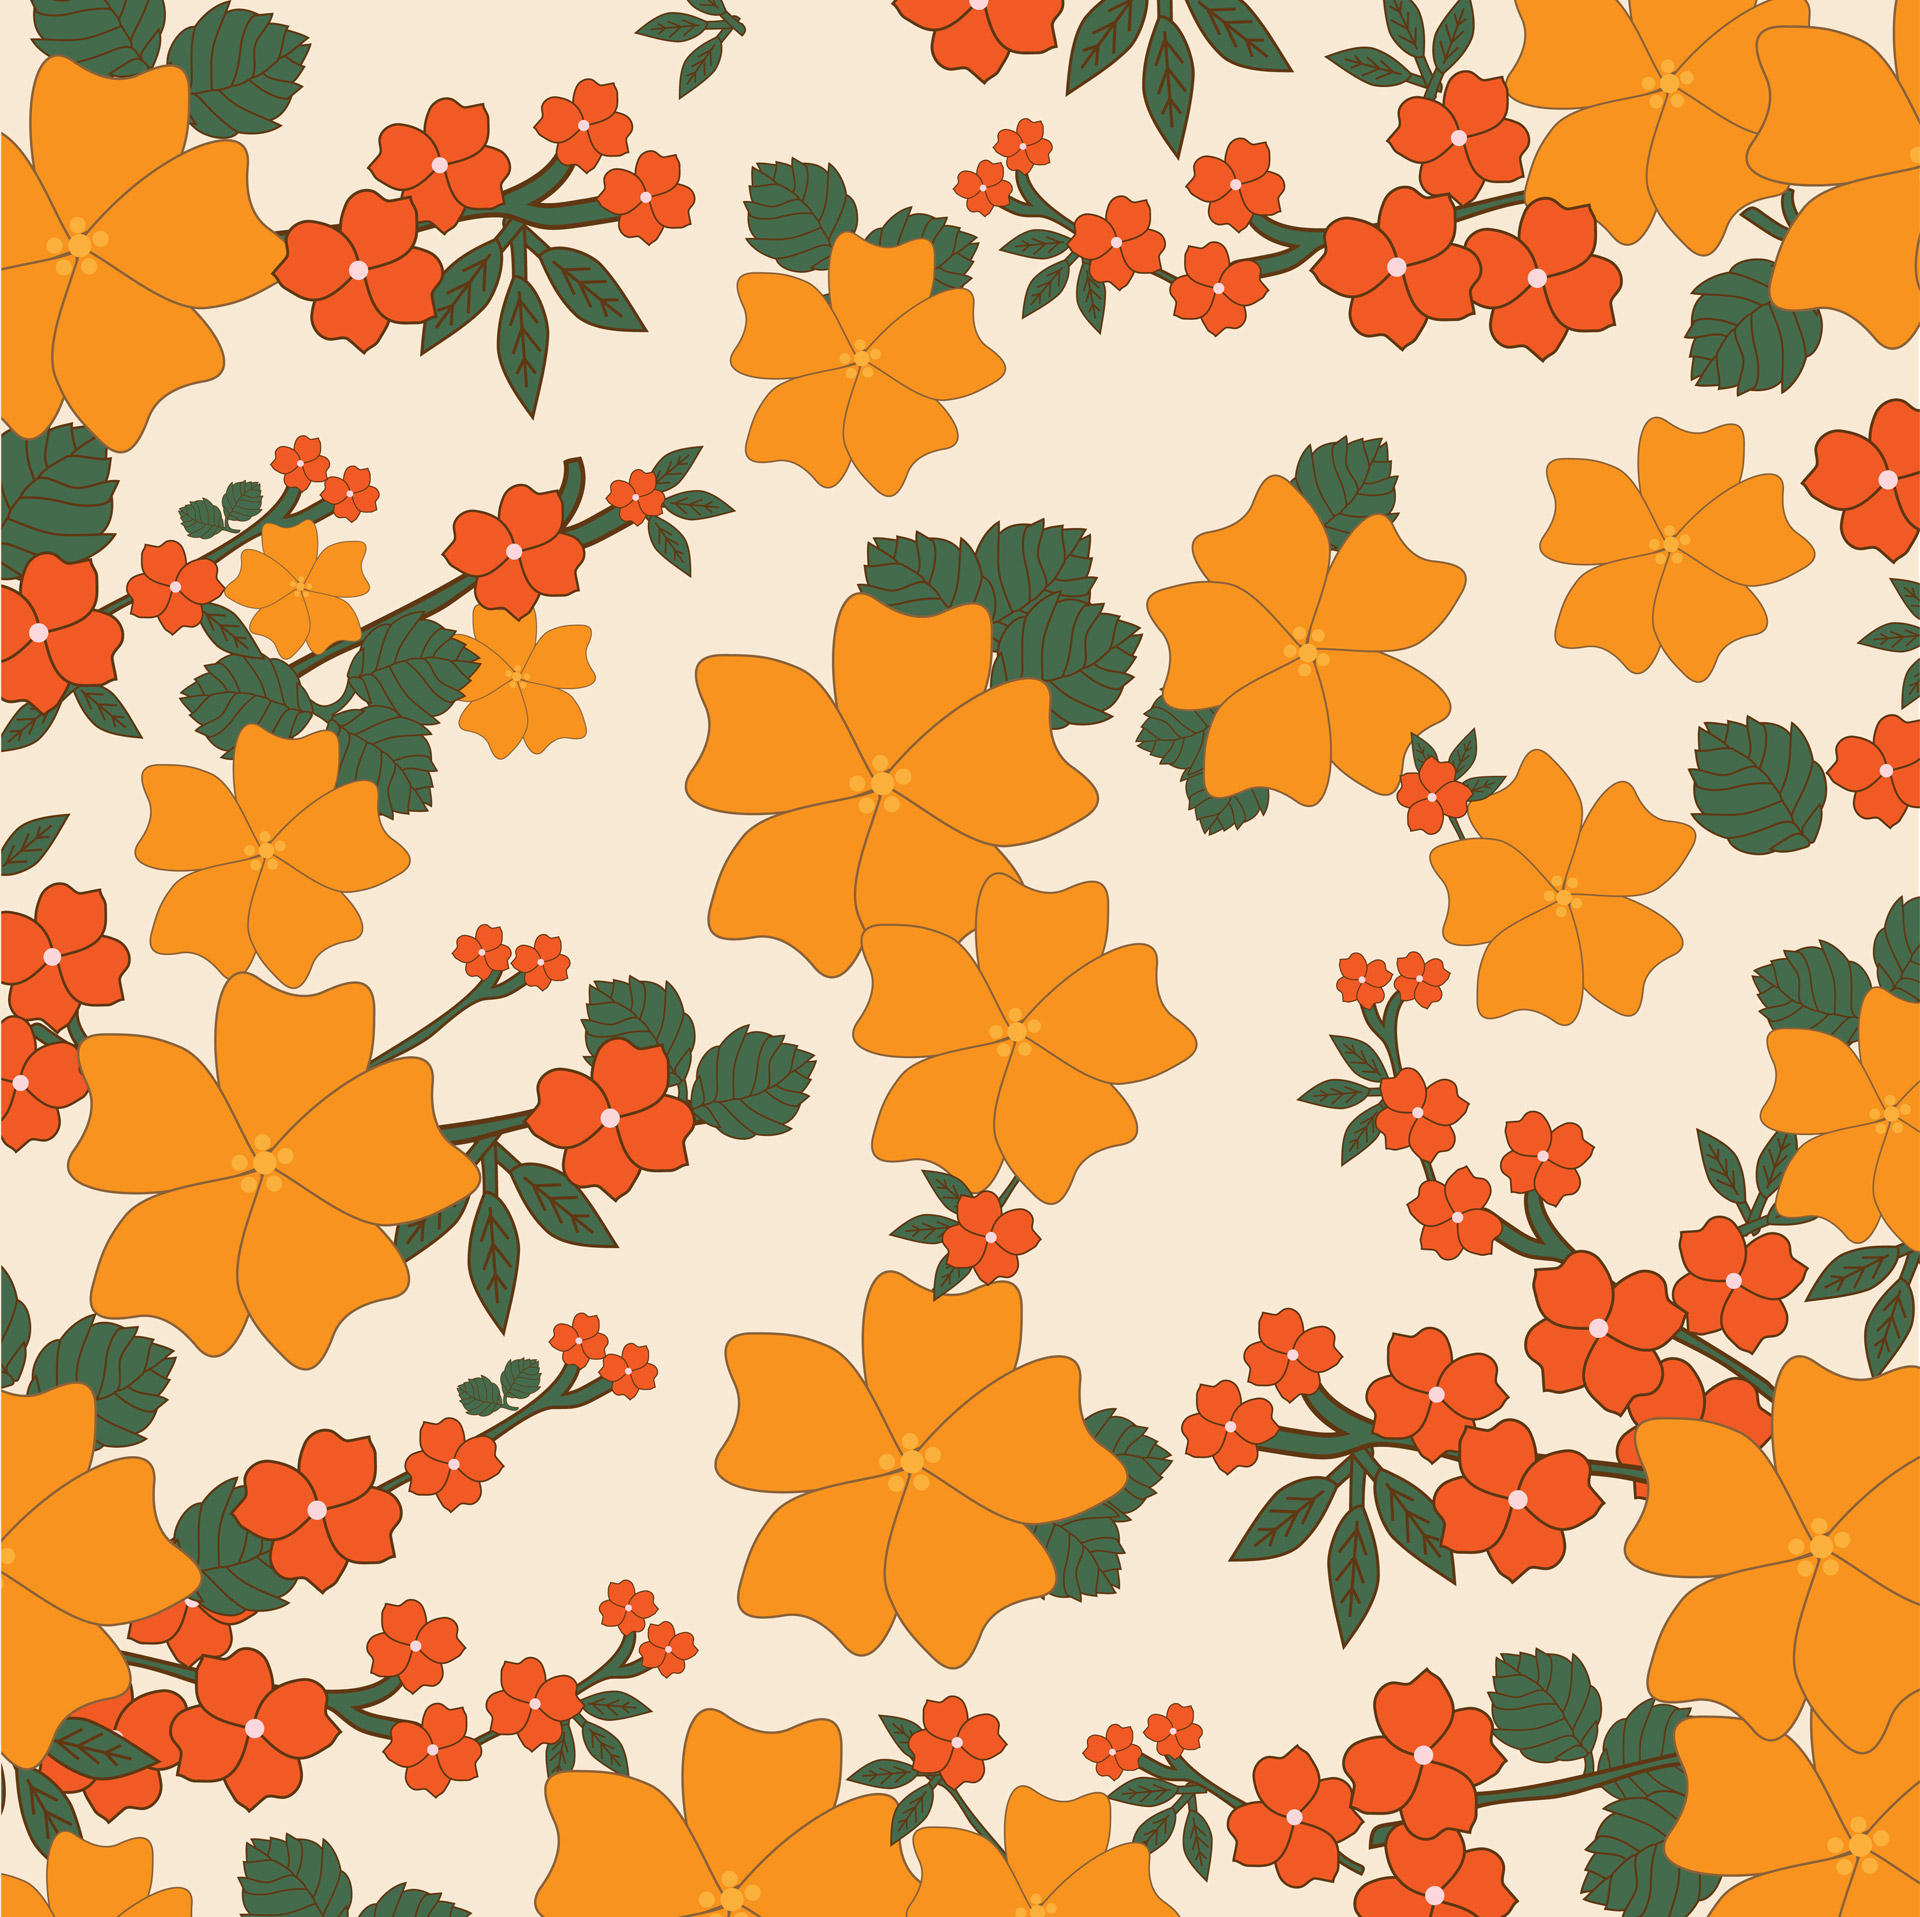 Wallpaper retro orange: Khám phá hình ảnh liên quan để tìm hiểu sự quyến rũ đầy thời trang của hình nền retro orange. Với màu cam nóng bỏng và họa tiết thời trang độc đáo, các bạn sẽ thực sự bị thu hút bởi sức hấp dẫn của hình nền này.